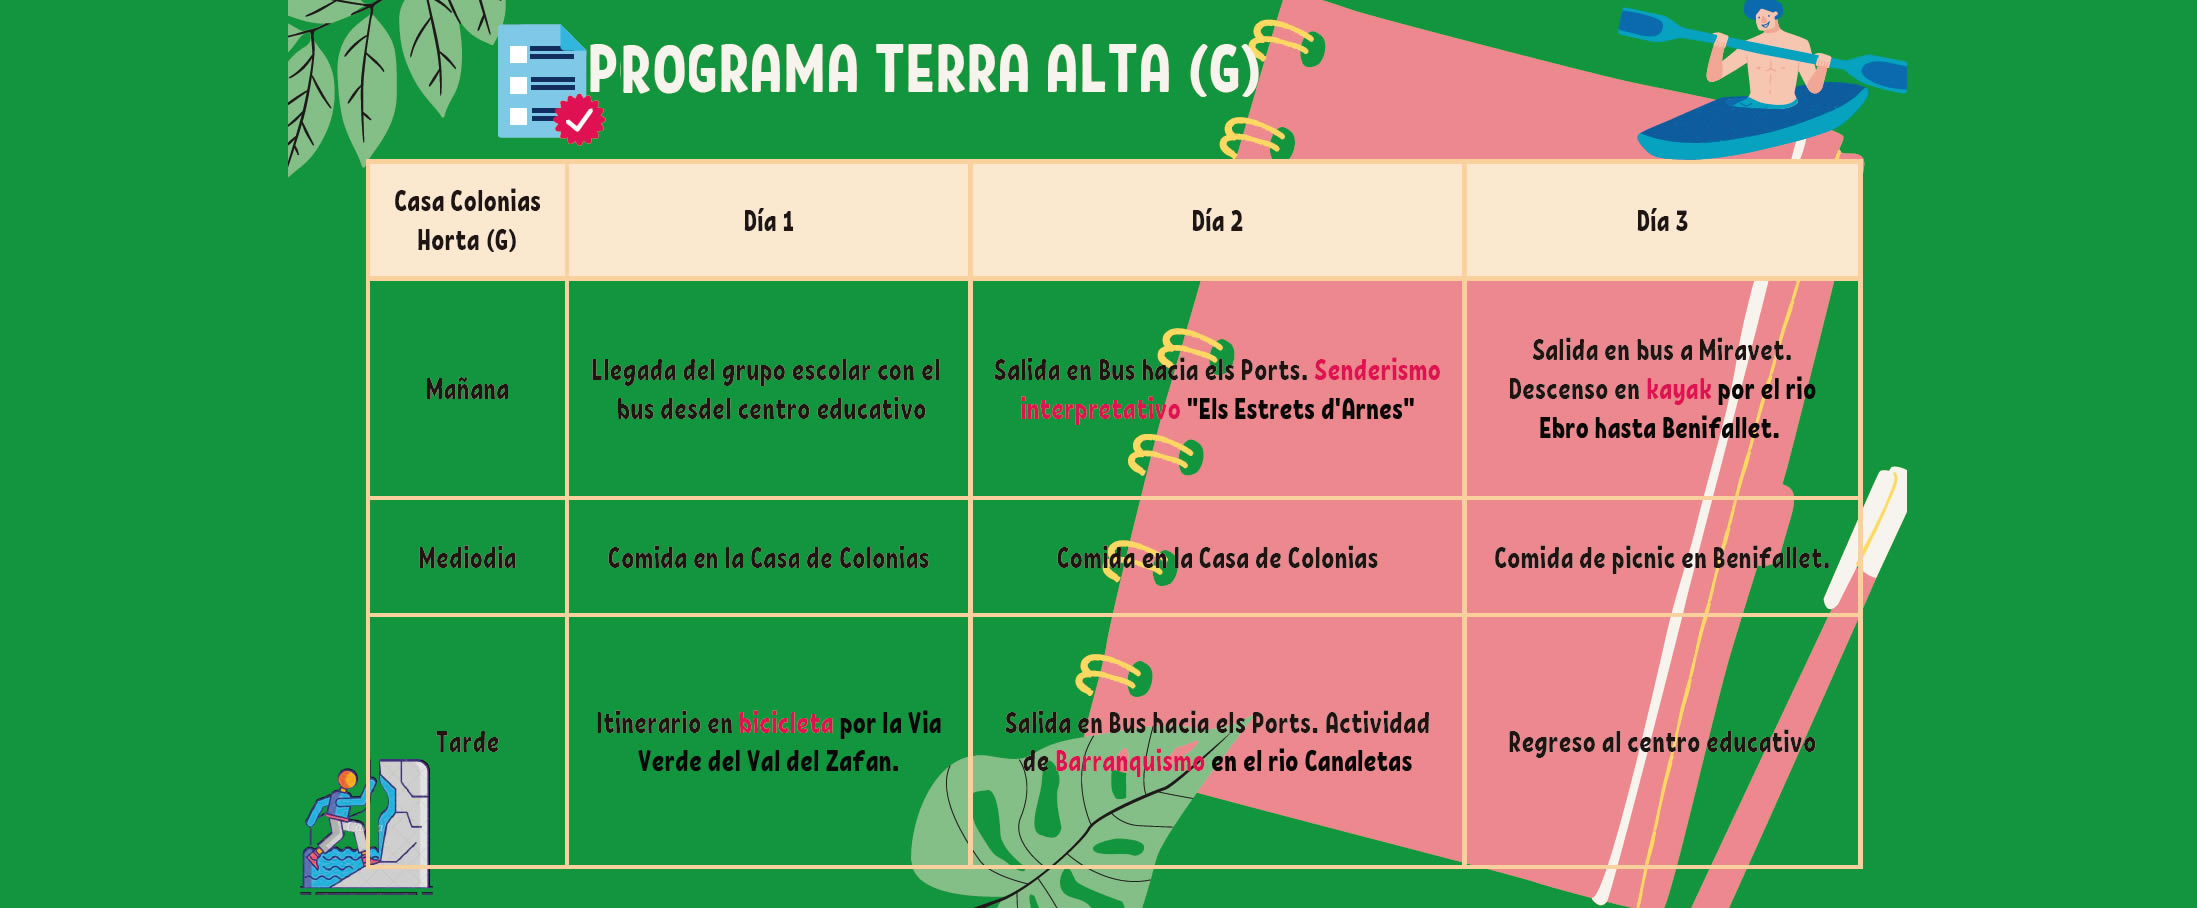 Programme scolaire Terra Alta – Maison de Colonies Horta (G)